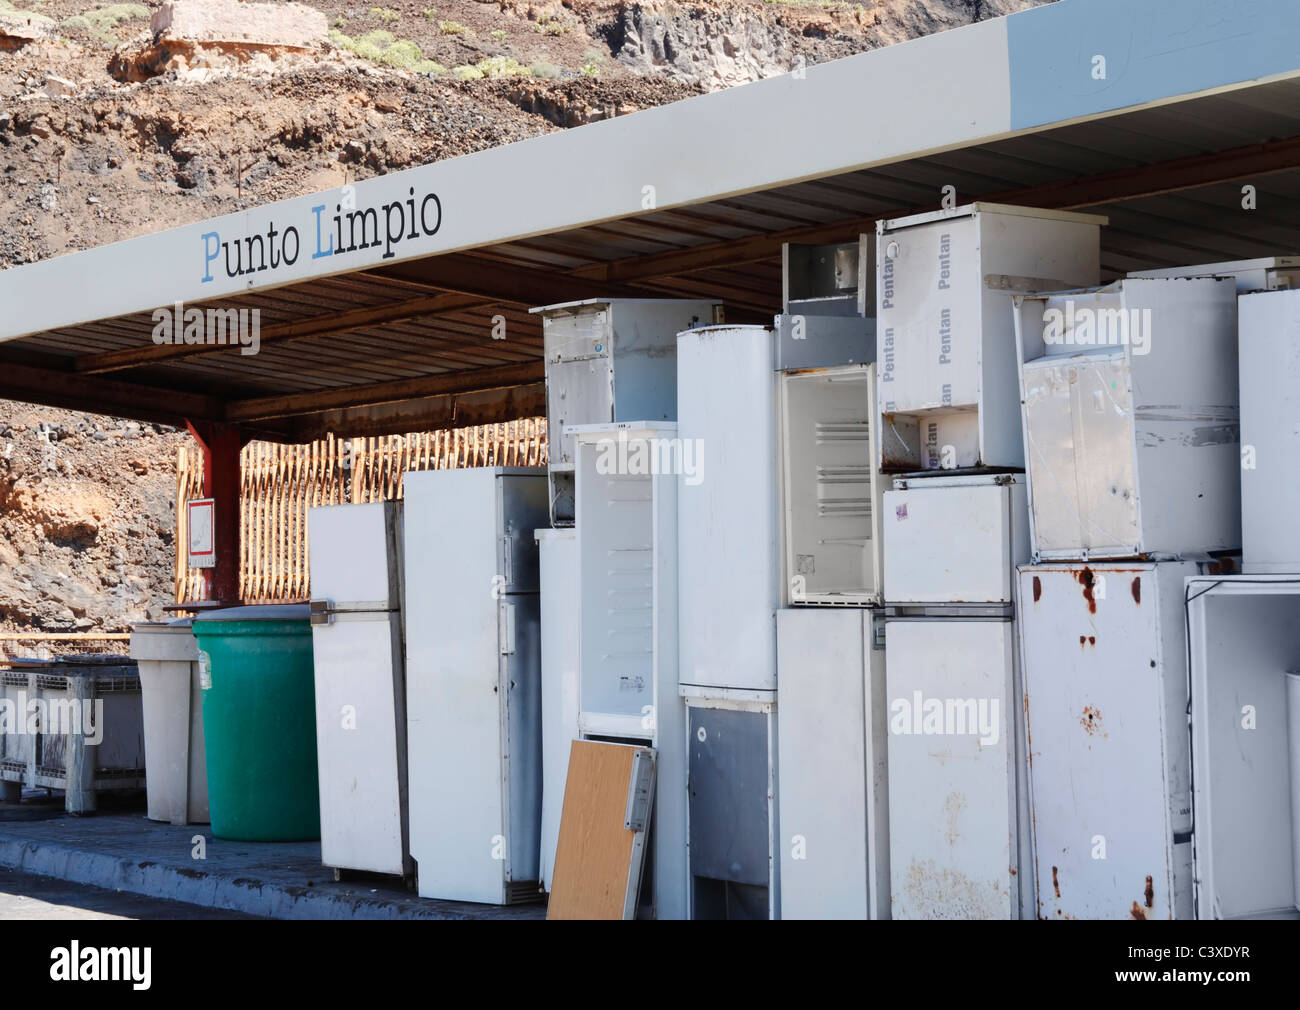 Frigoríficos en el consejo central de reciclaje, punto limpio (punto limpio) en España Foto de stock